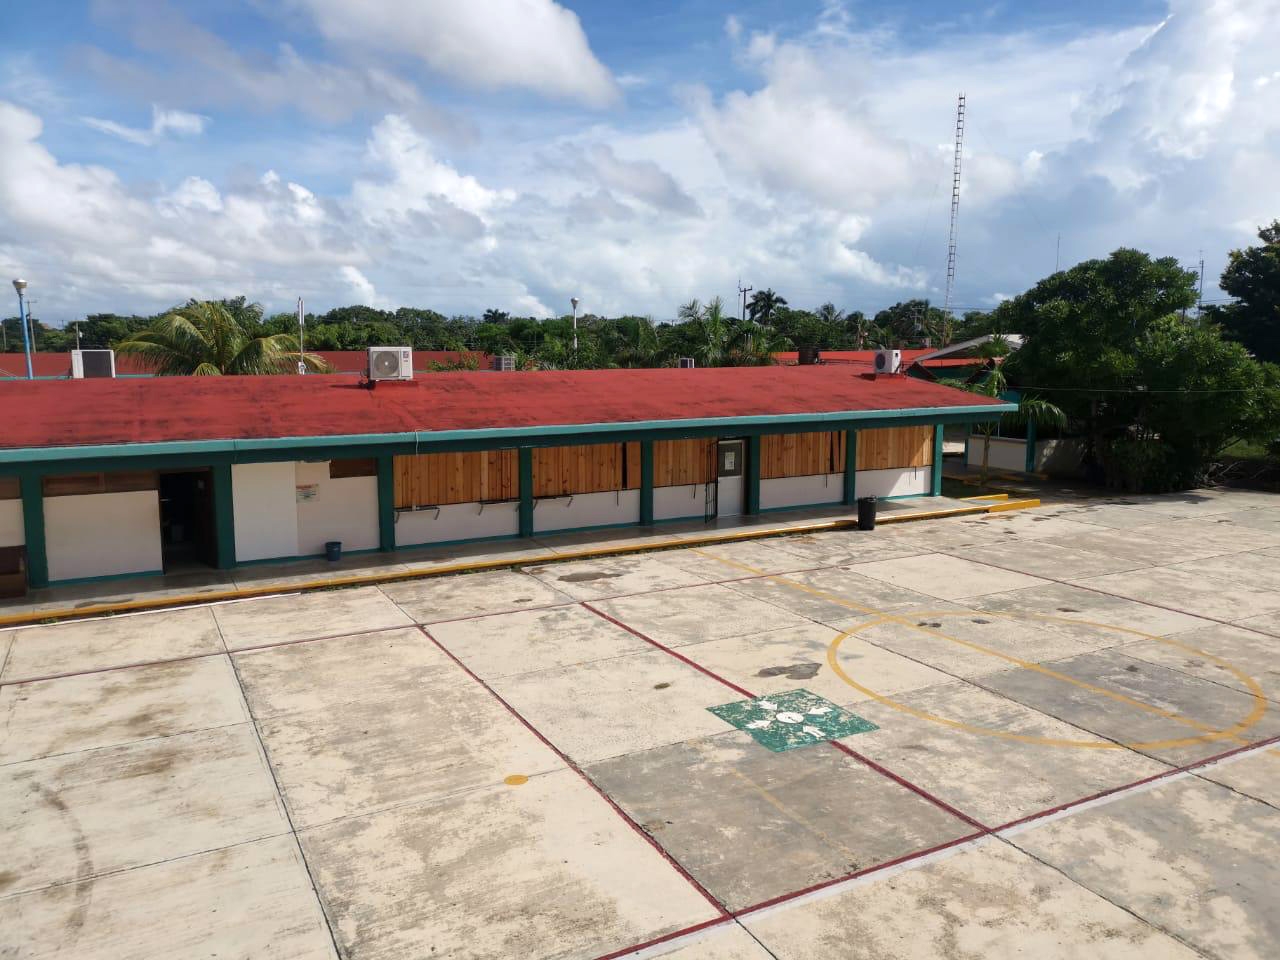 Tormenta Tropical 'Grace' en Quintana Roo: Ubica tu refugio anticiclónico